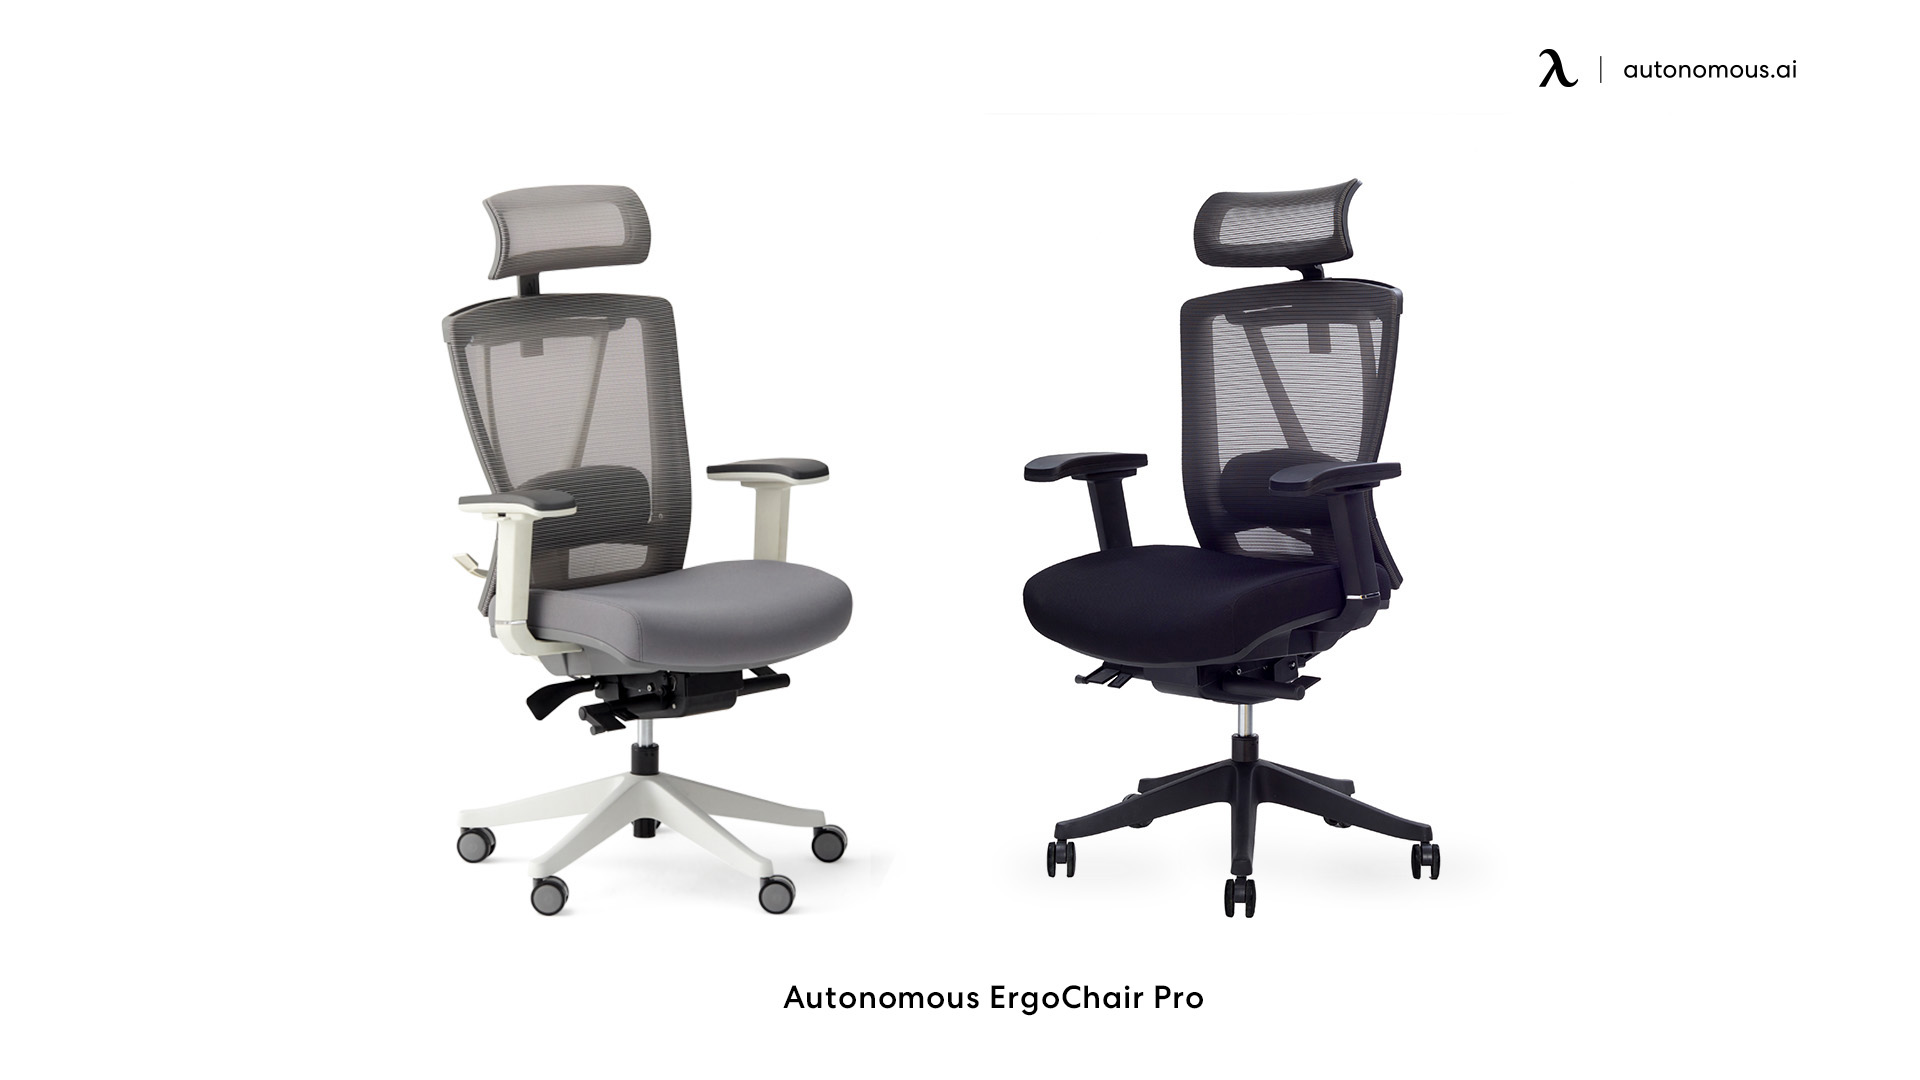 ErgoChair Pro rolling chair